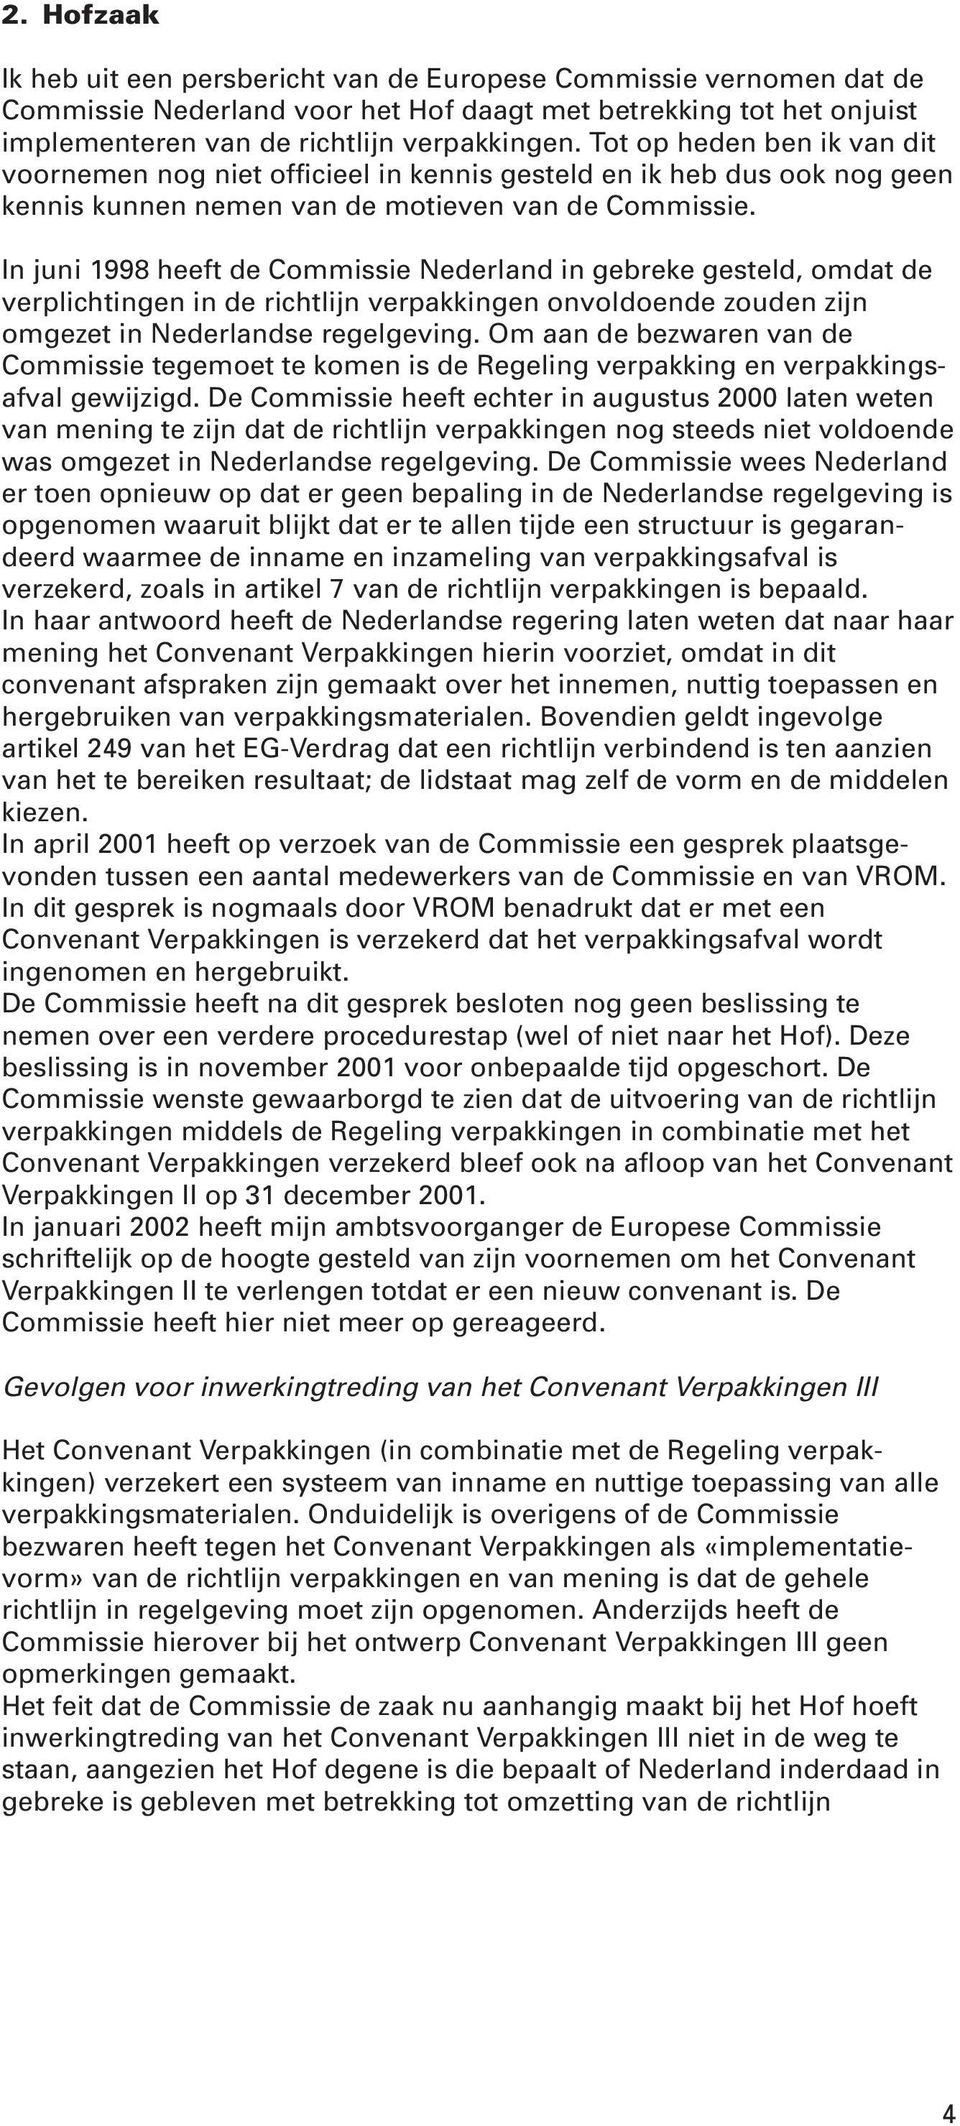 In juni 1998 heeft de Commissie Nederland in gebreke gesteld, omdat de verplichtingen in de richtlijn verpakkingen onvoldoende zouden zijn omgezet in Nederlandse regelgeving.